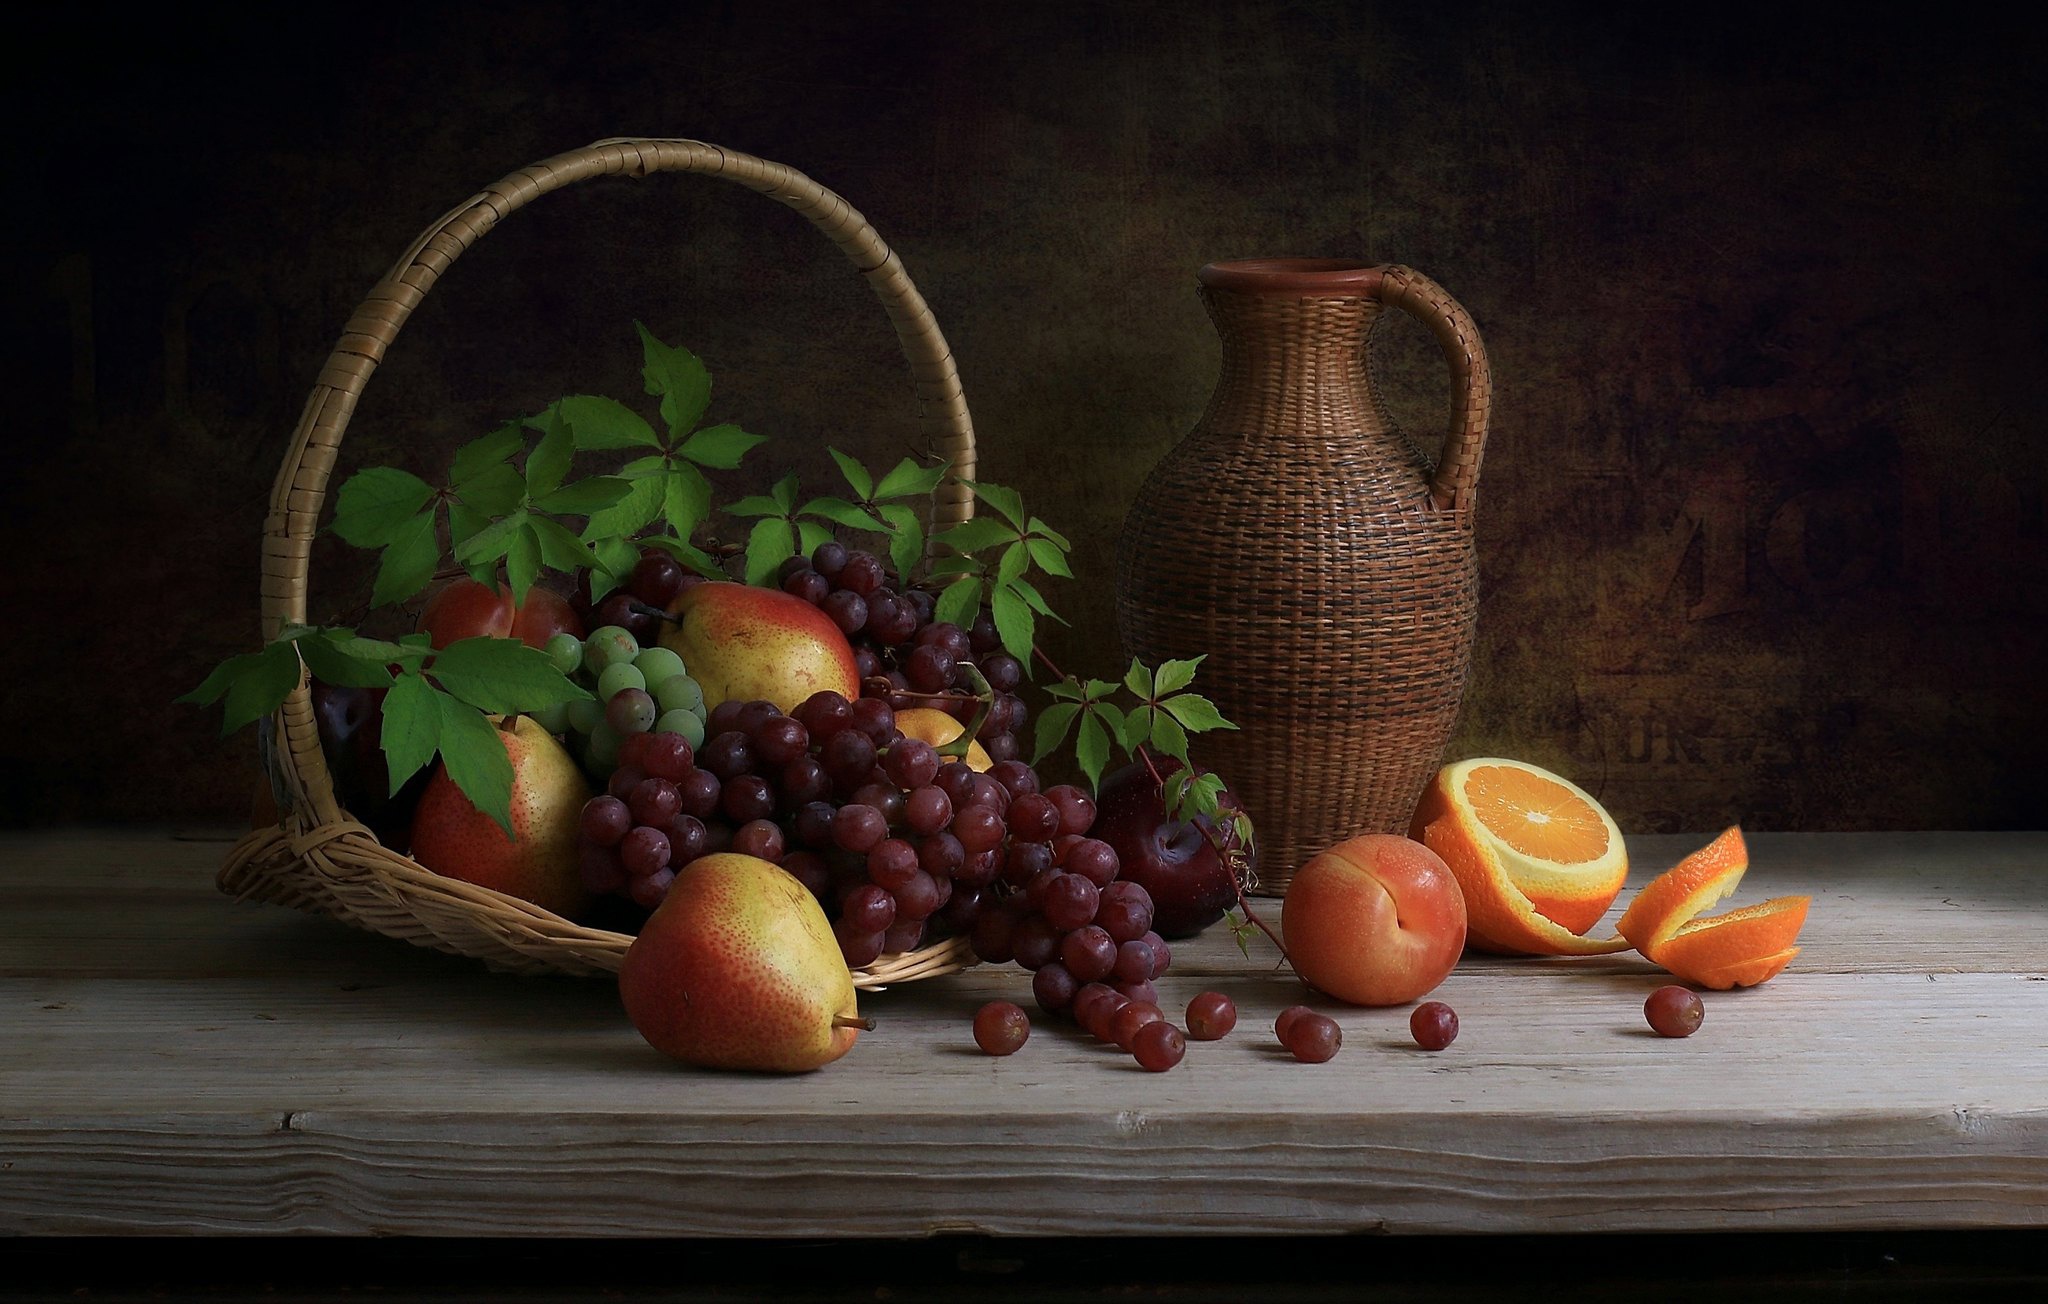 Free download wallpaper Food, Grapes, Still Life, Basket, Pear, Orange (Fruit), Pitcher on your PC desktop